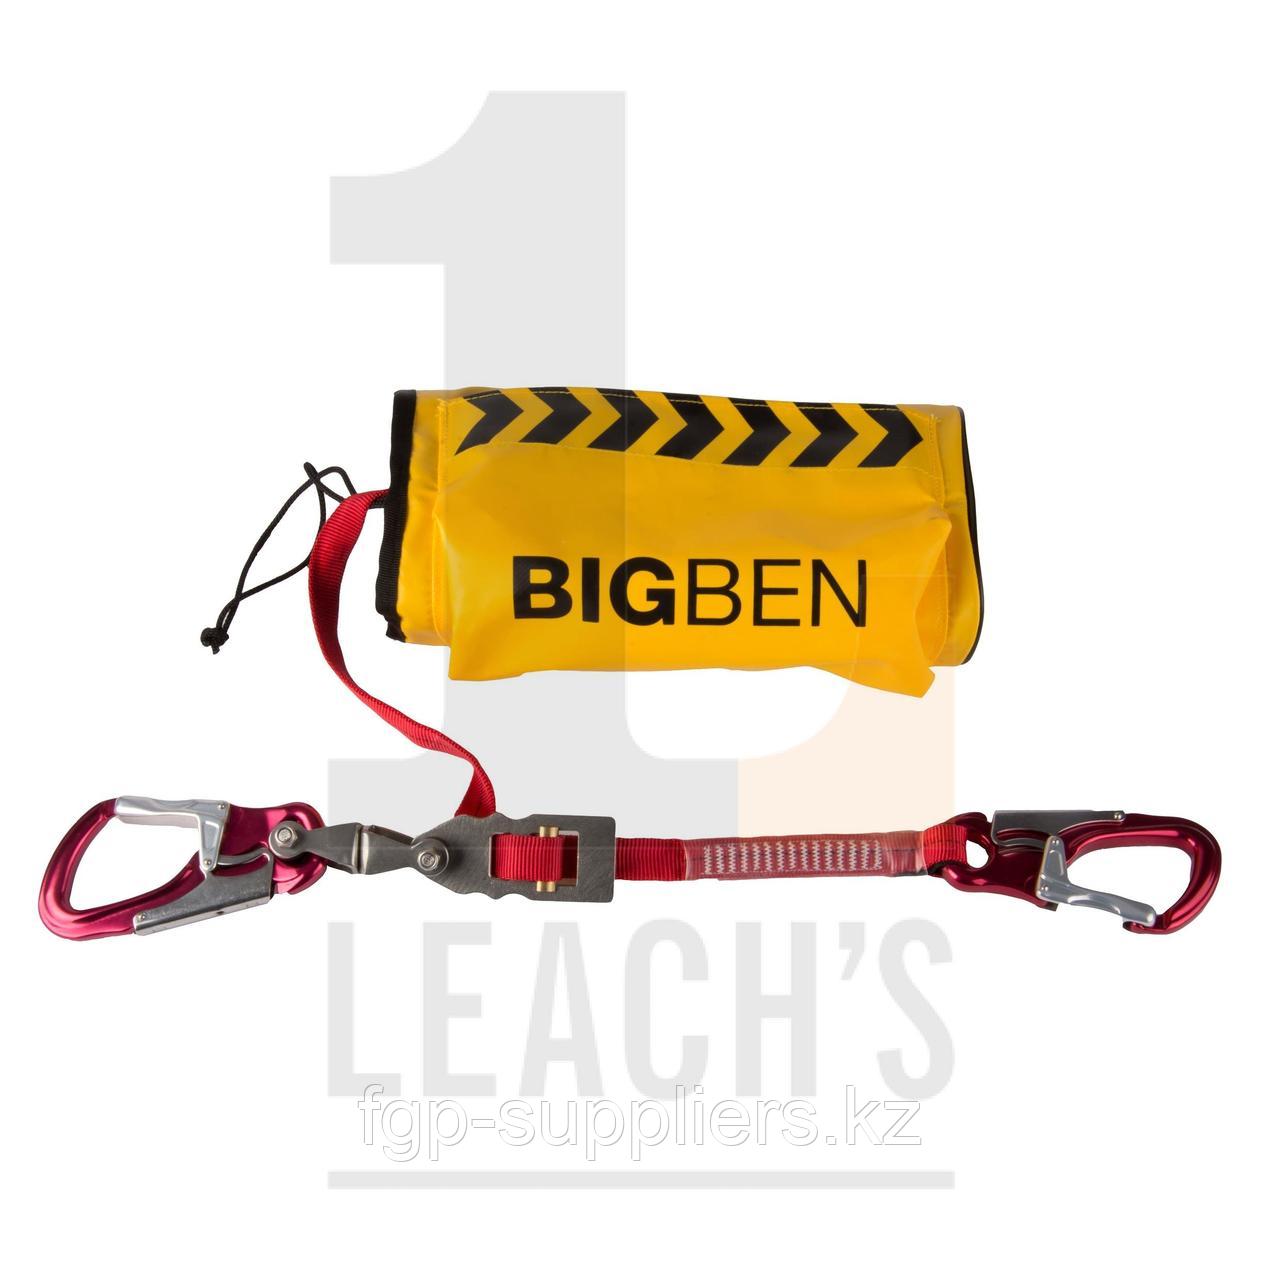 BIG BEN Rescue & Evacuation Kit in a bag, Stainless Steel – 20m / BIG BEN Сумка с спасательно-эвакуационным комплектом, из нержавеющей стали – 20м